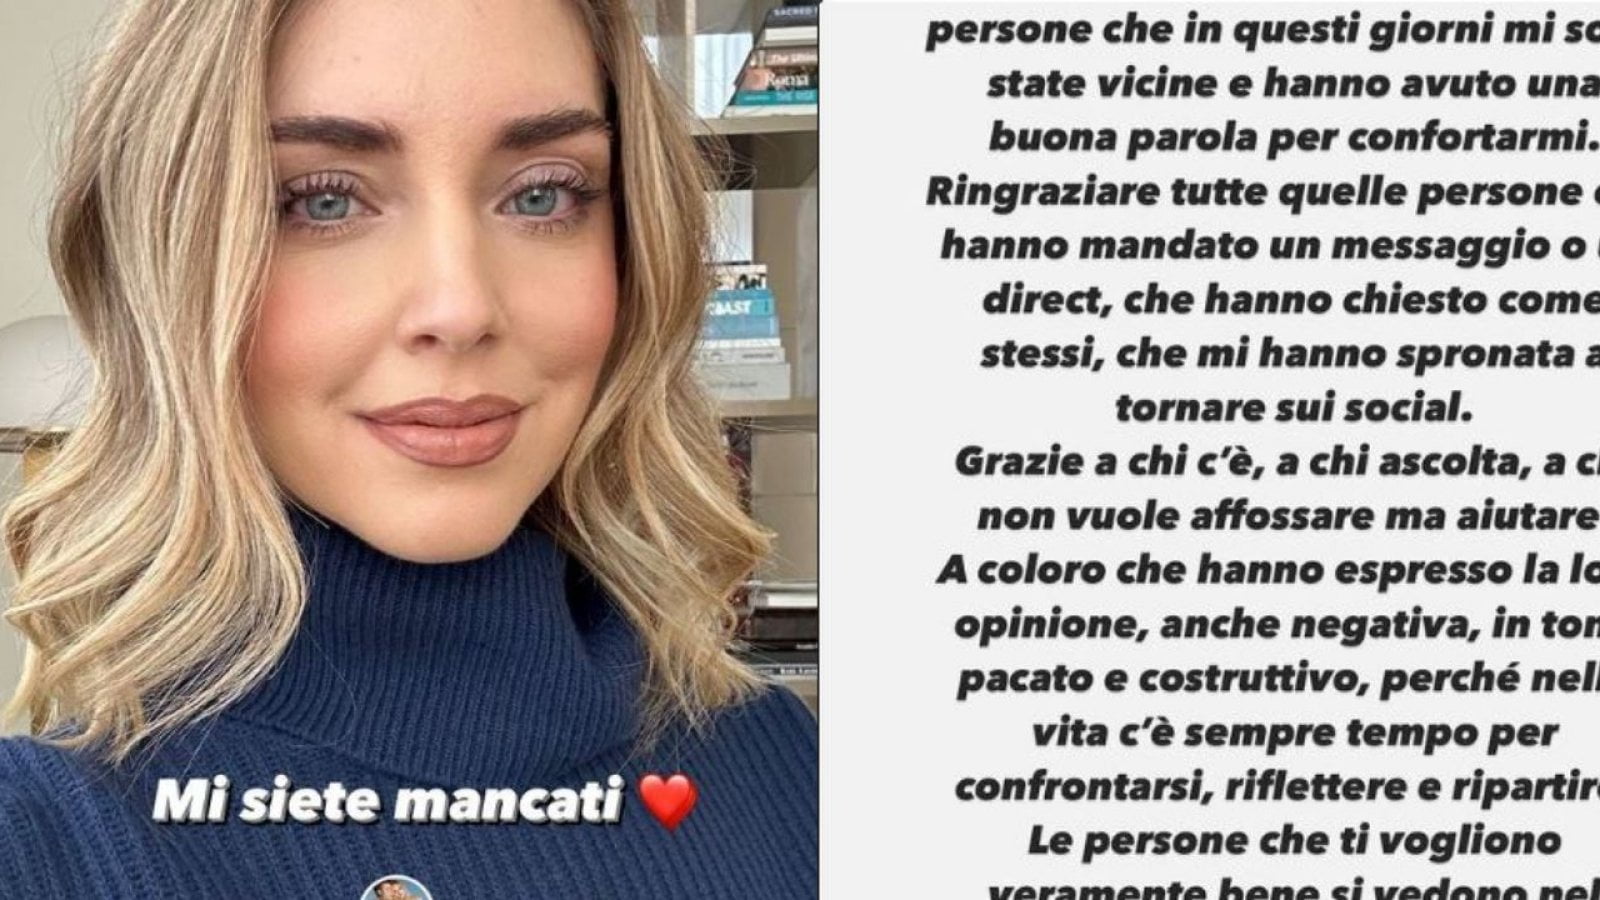 Chiara Ferragni, dopo l’uragano pandoro-gate, torna su Instagram, “Mi siete mancati. Come state? Nella vita c’è sempre tempo per ripartire”